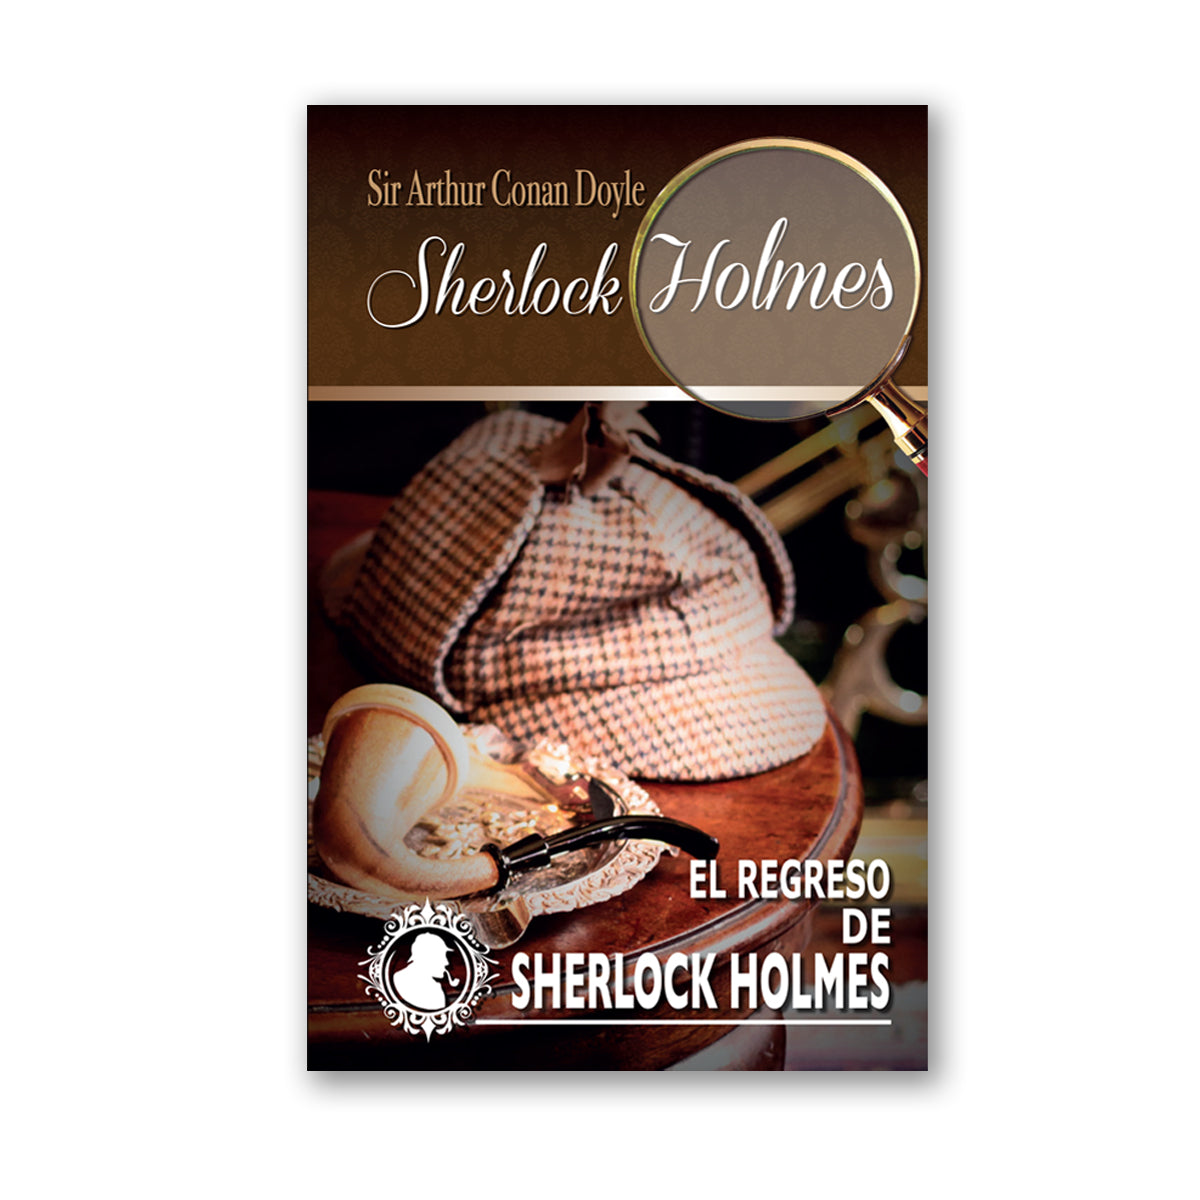 Colección Sherlock Holmes "El Regreso de Sherlock Holmes"